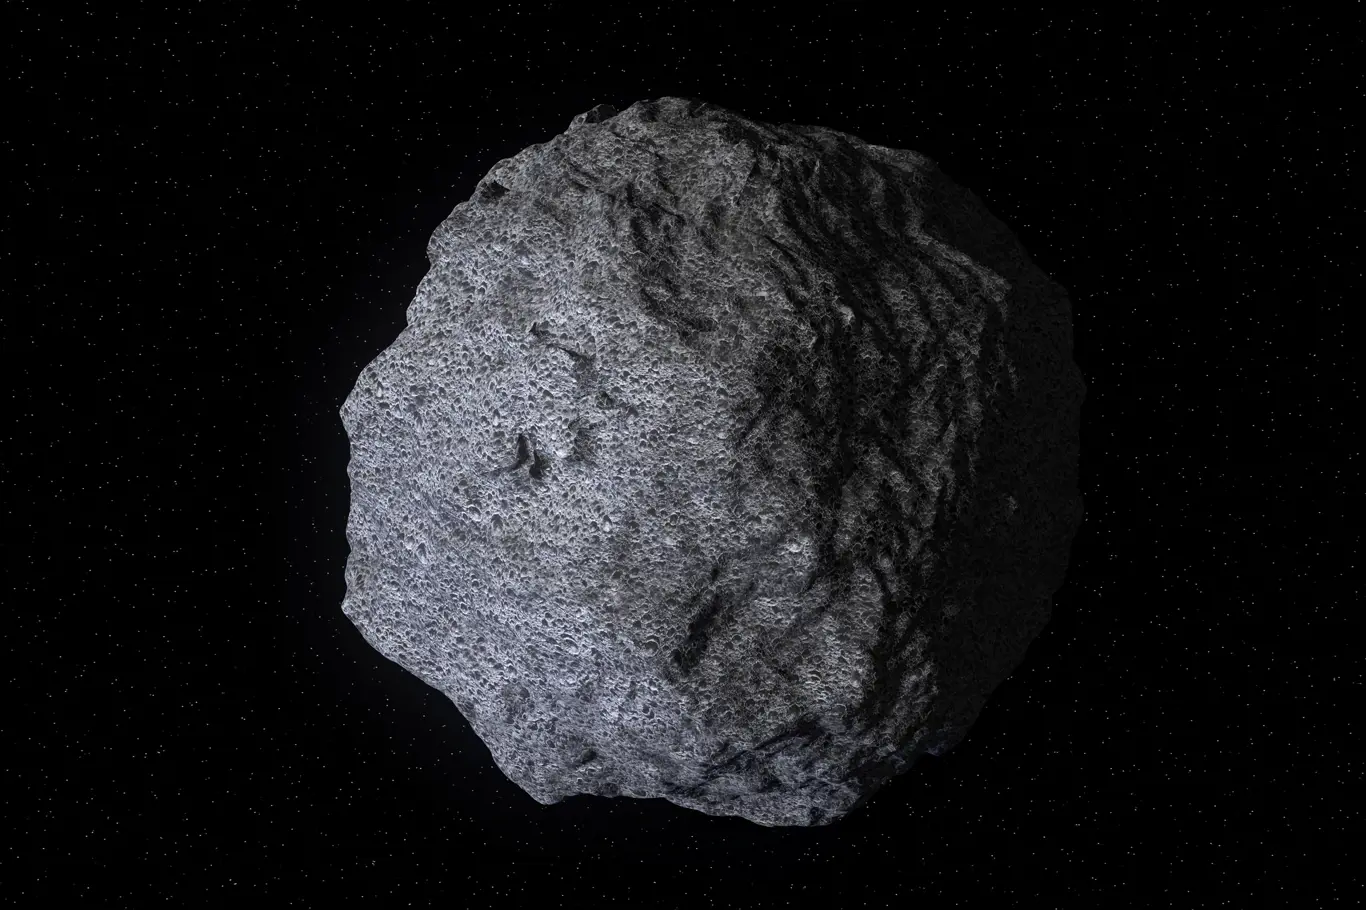 101955 Bennu, uhlíkatý asteroid ve Sluneční soustavě, potenciálně nebezpečný objekt, který v budoucnu narazí do Země.